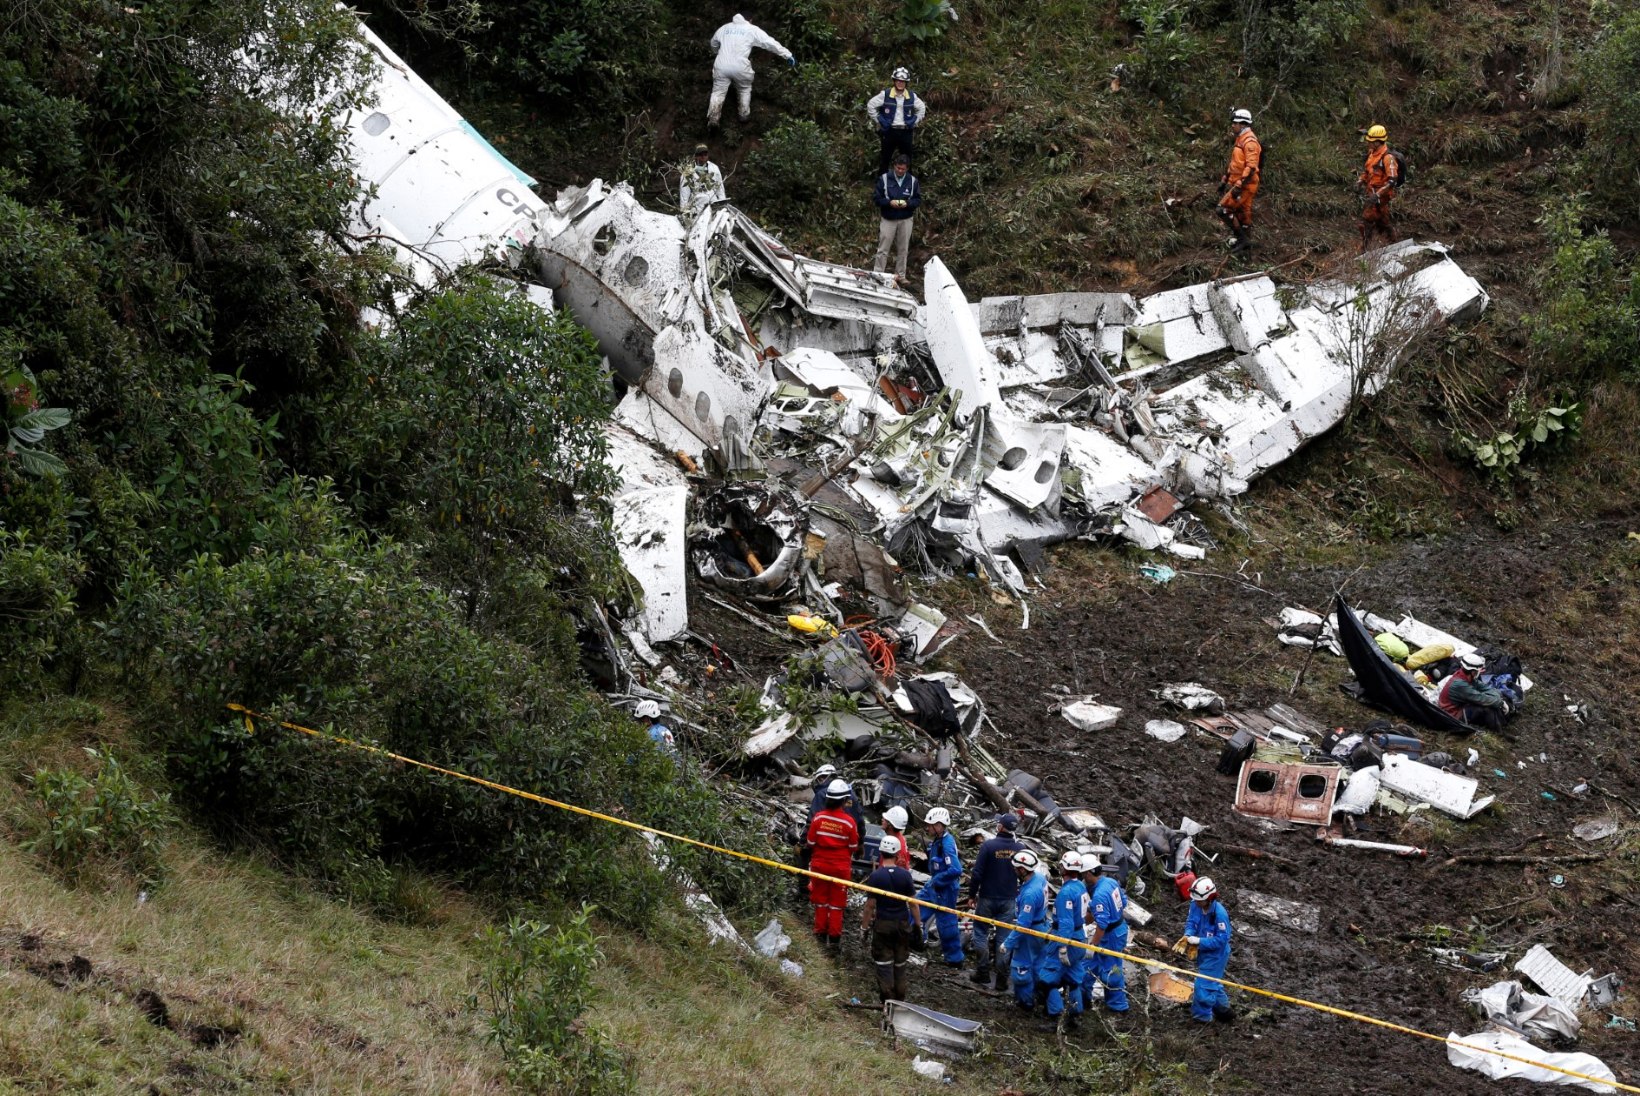 SÜÜDLASI OTSITAKSE: Chapecoense pallurid surma viinud lennufirma tegevdirektor võeti vahi alla, lennujuht põgenes 